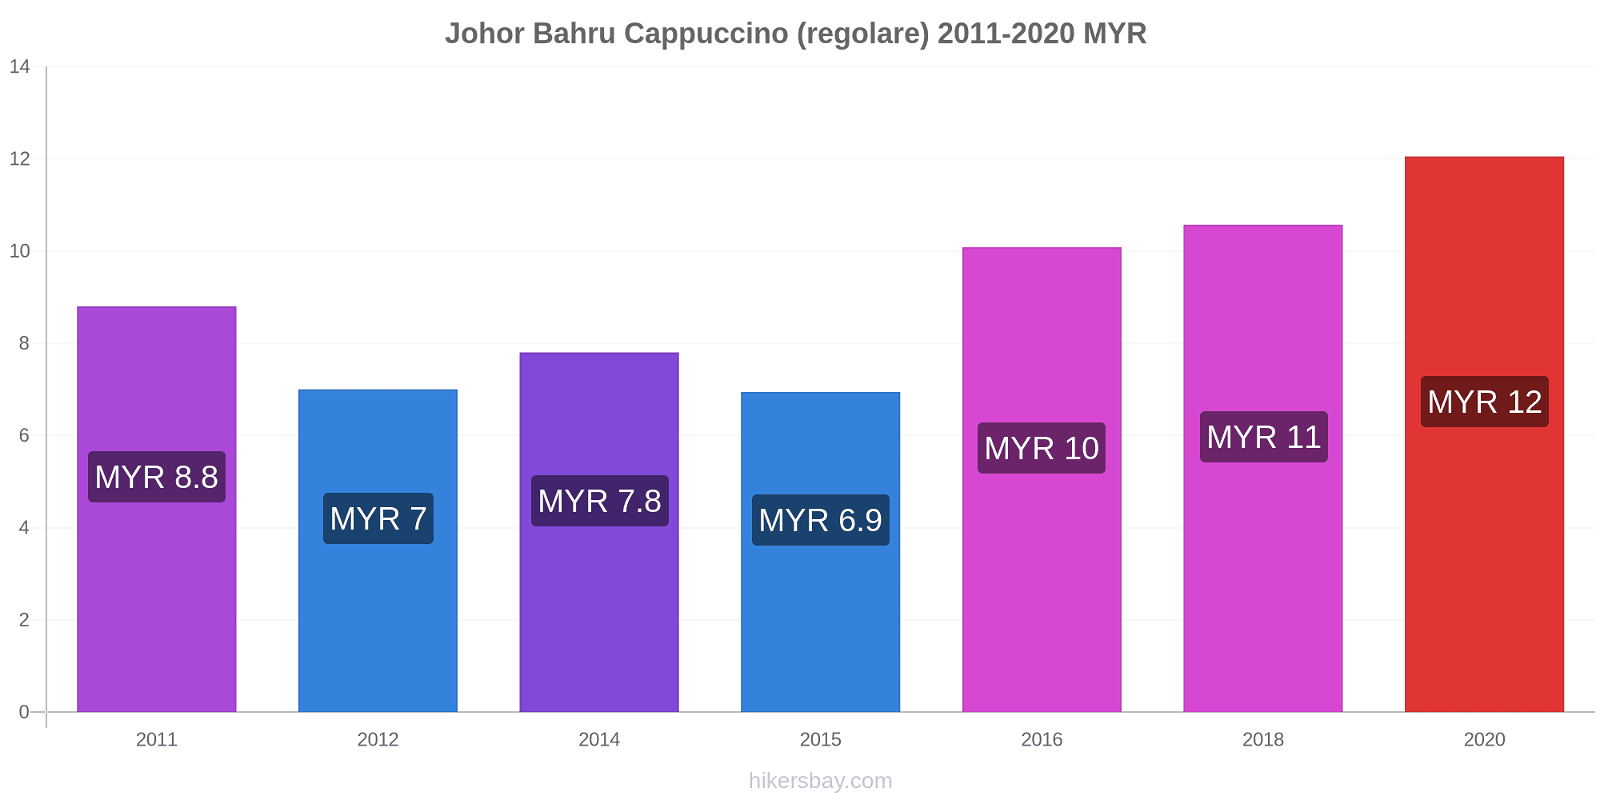 Johor Bahru variazioni di prezzo Cappuccino (normale) hikersbay.com